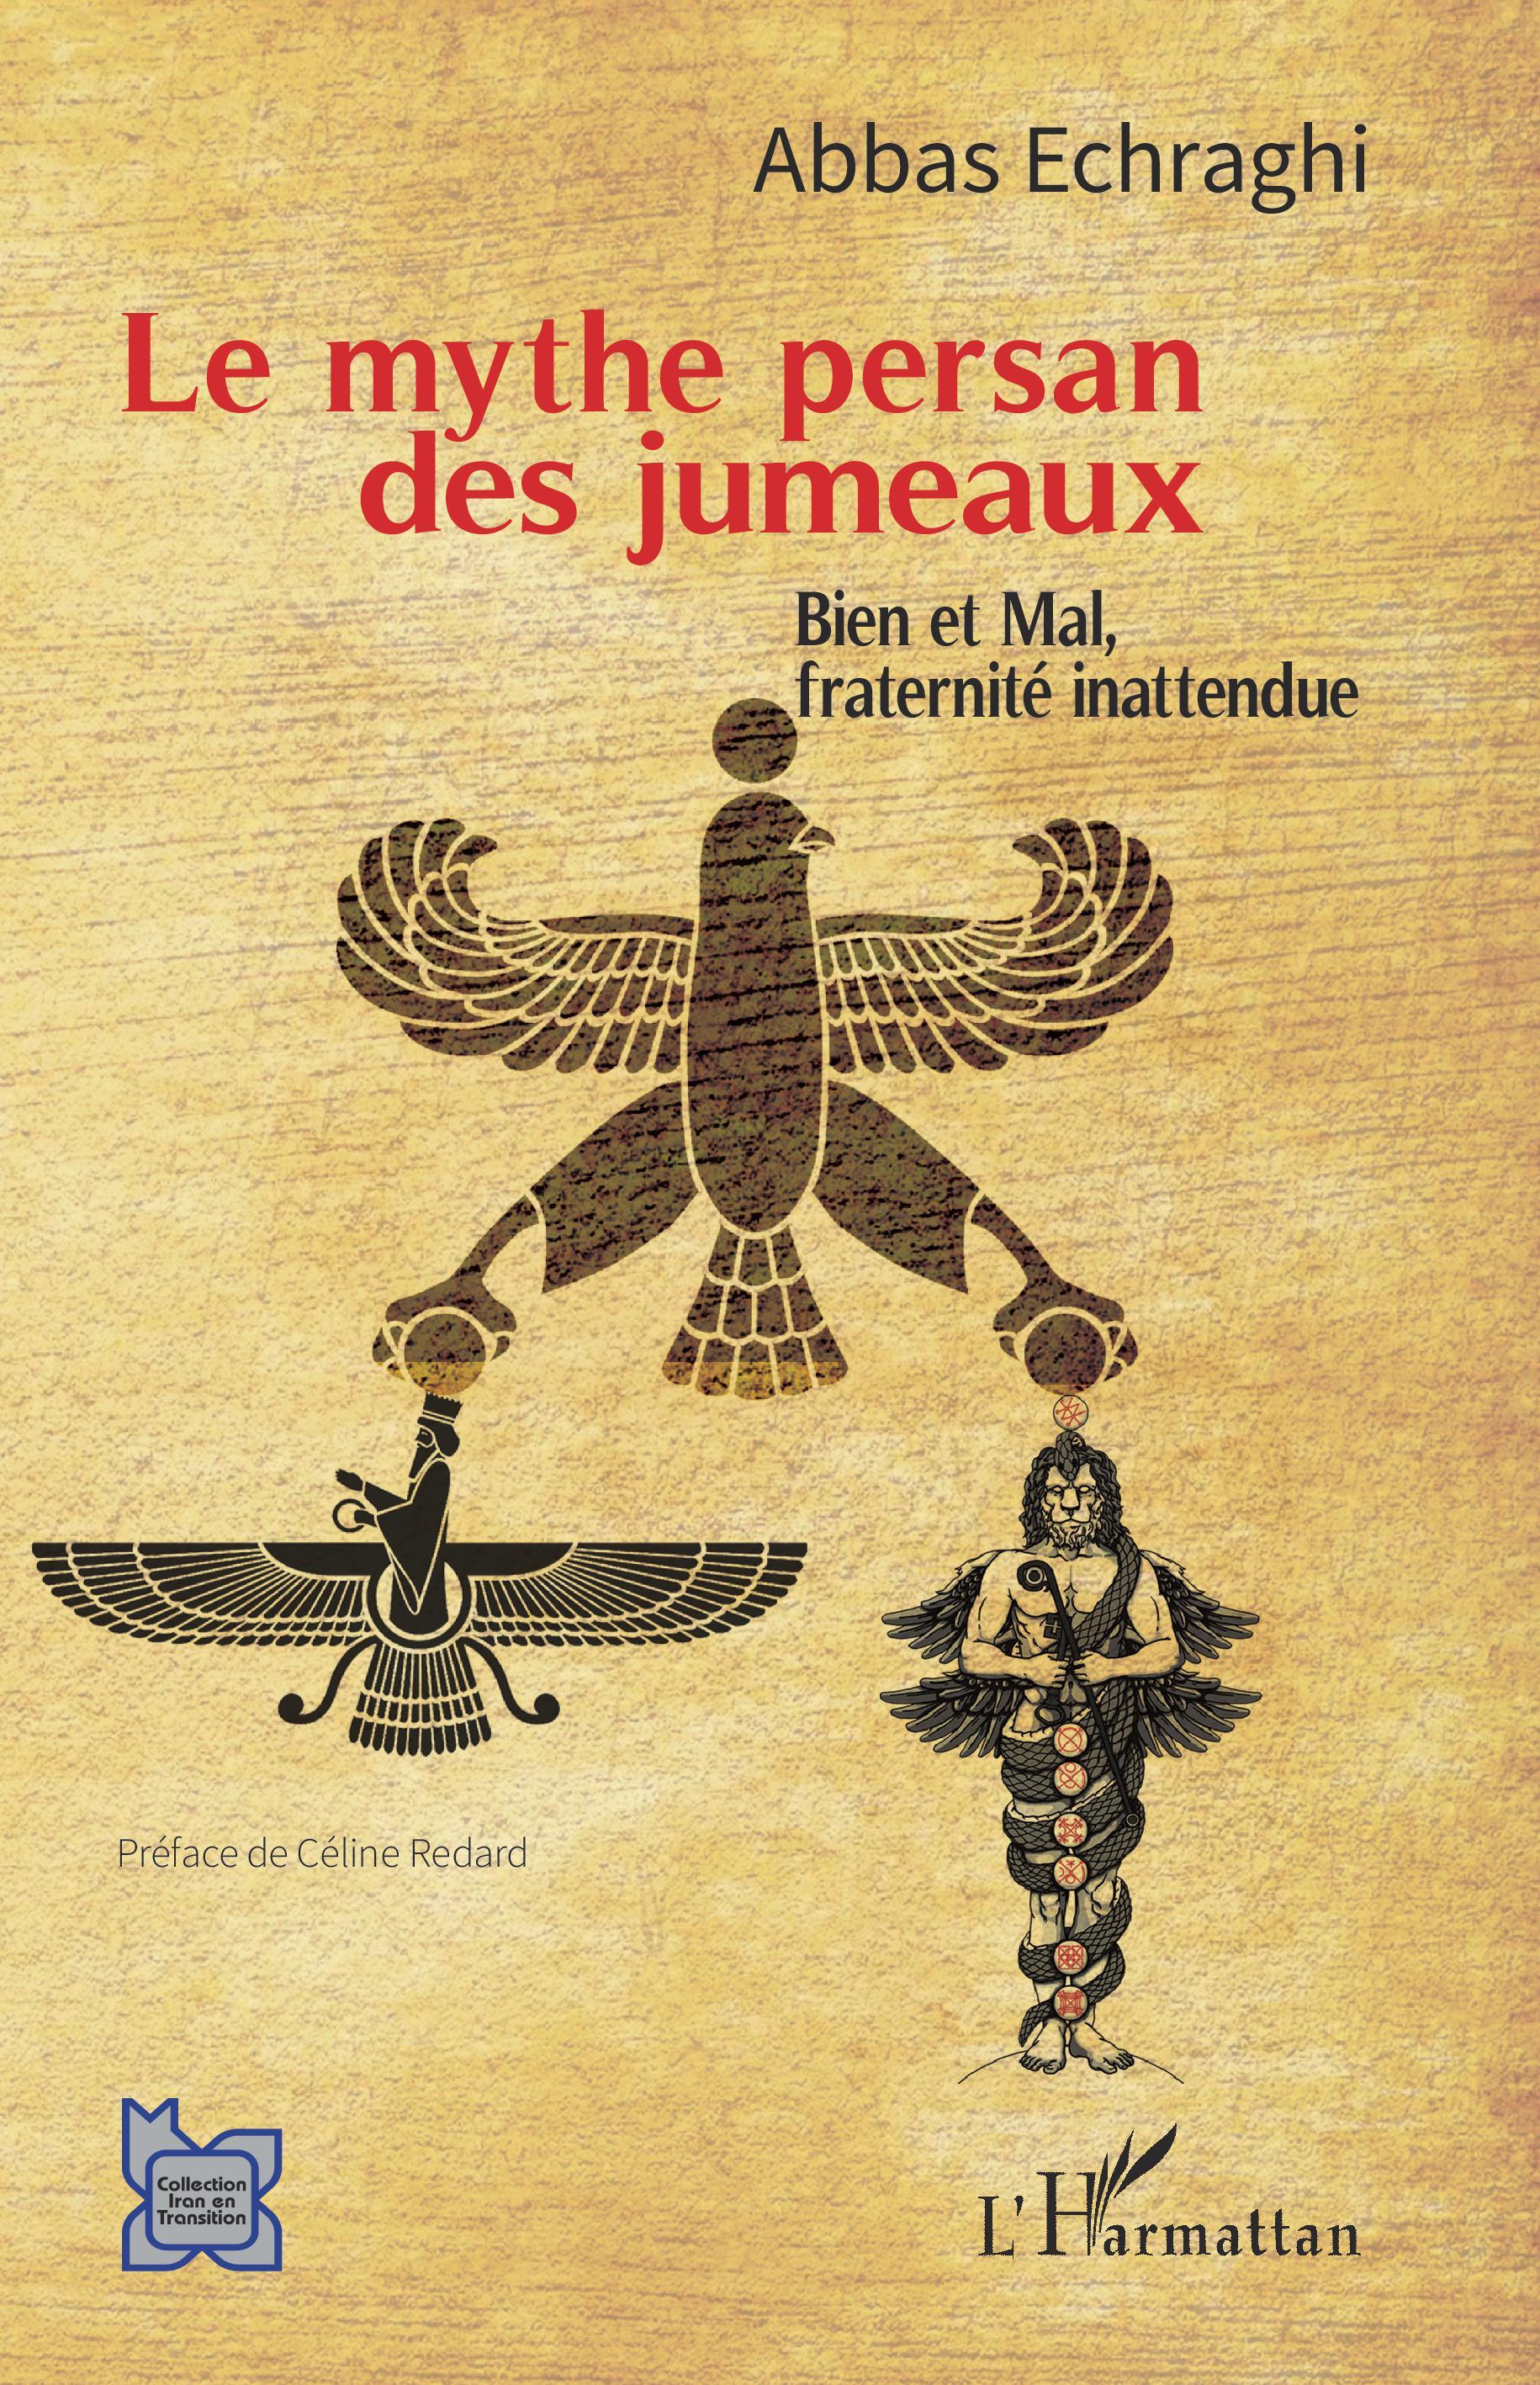 Le mythe persan des jumeaux, Bien et Mal, fraternité inattendue (9782140295539-front-cover)